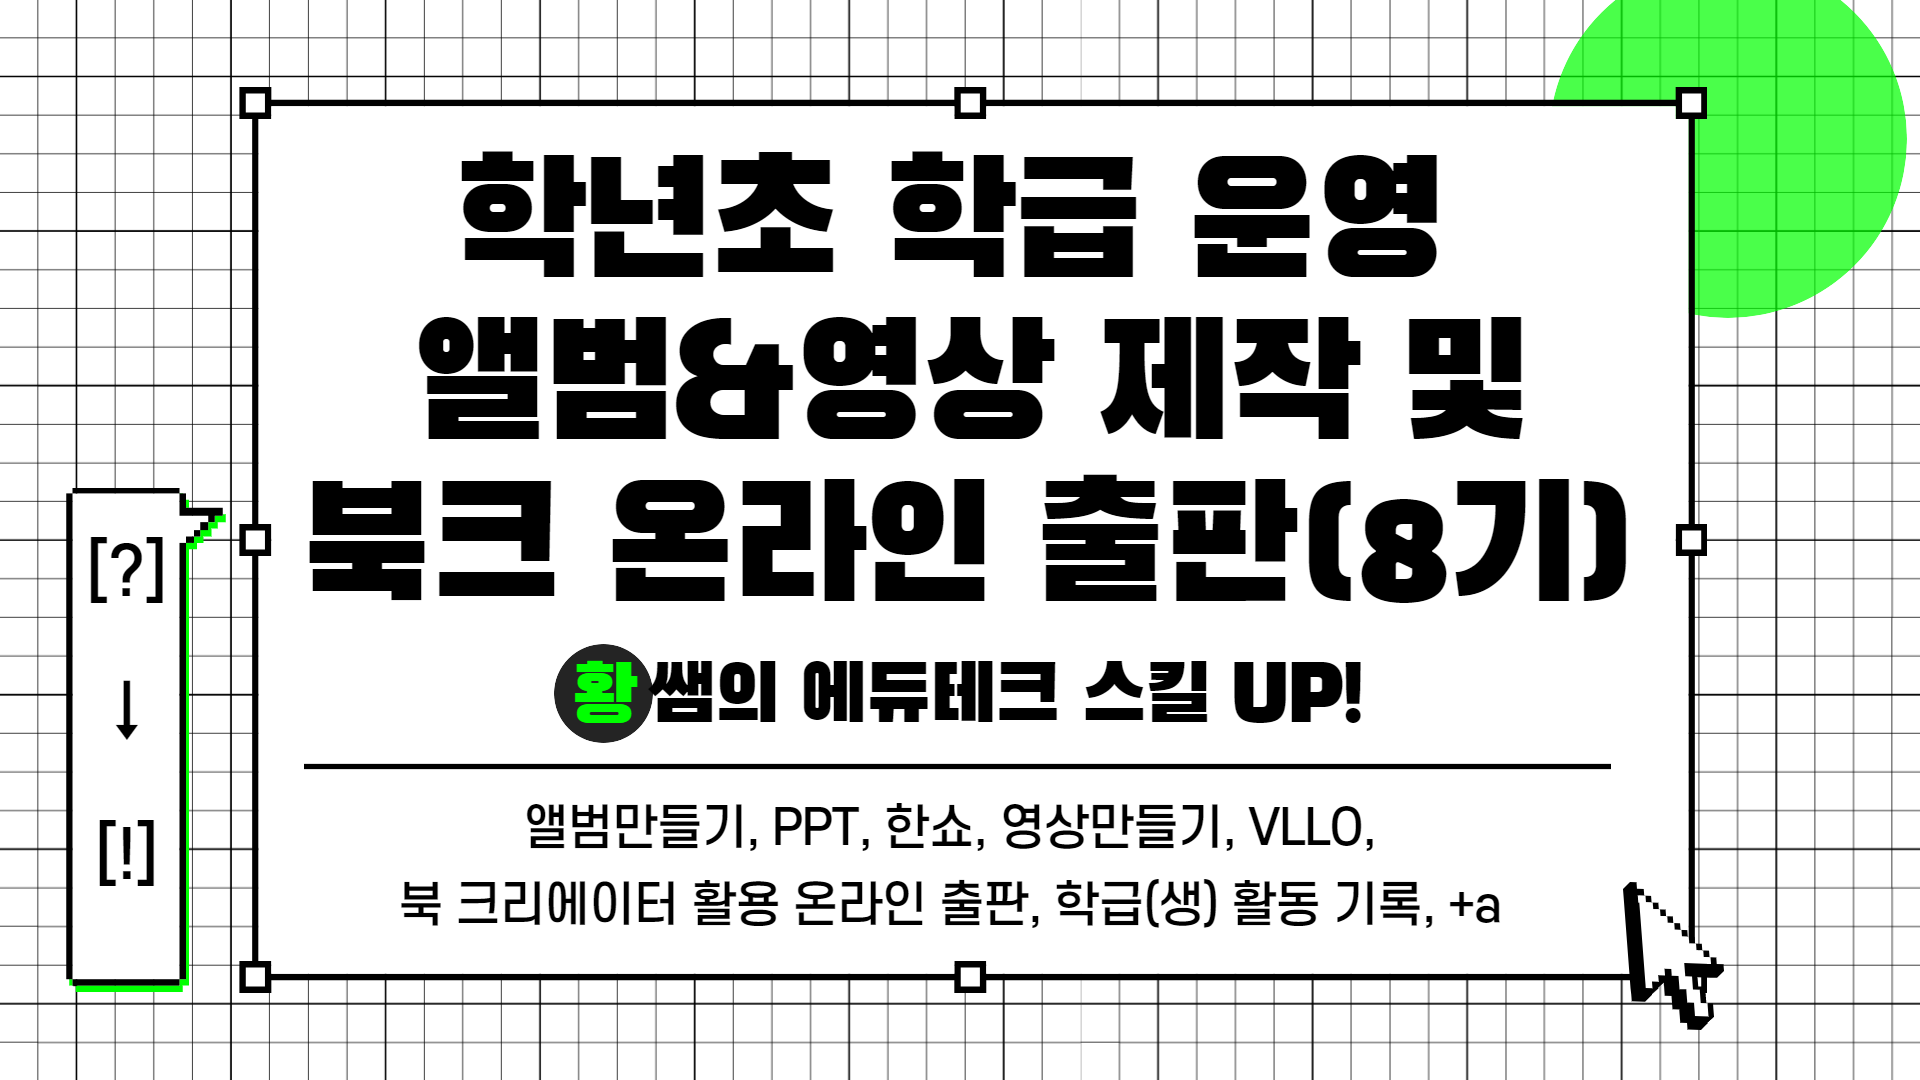 [?] → [!] 황쌤의 에듀테크 스킬 UP!(학급 운영 앨범&영상 제작 및 온라인 출판(8기))